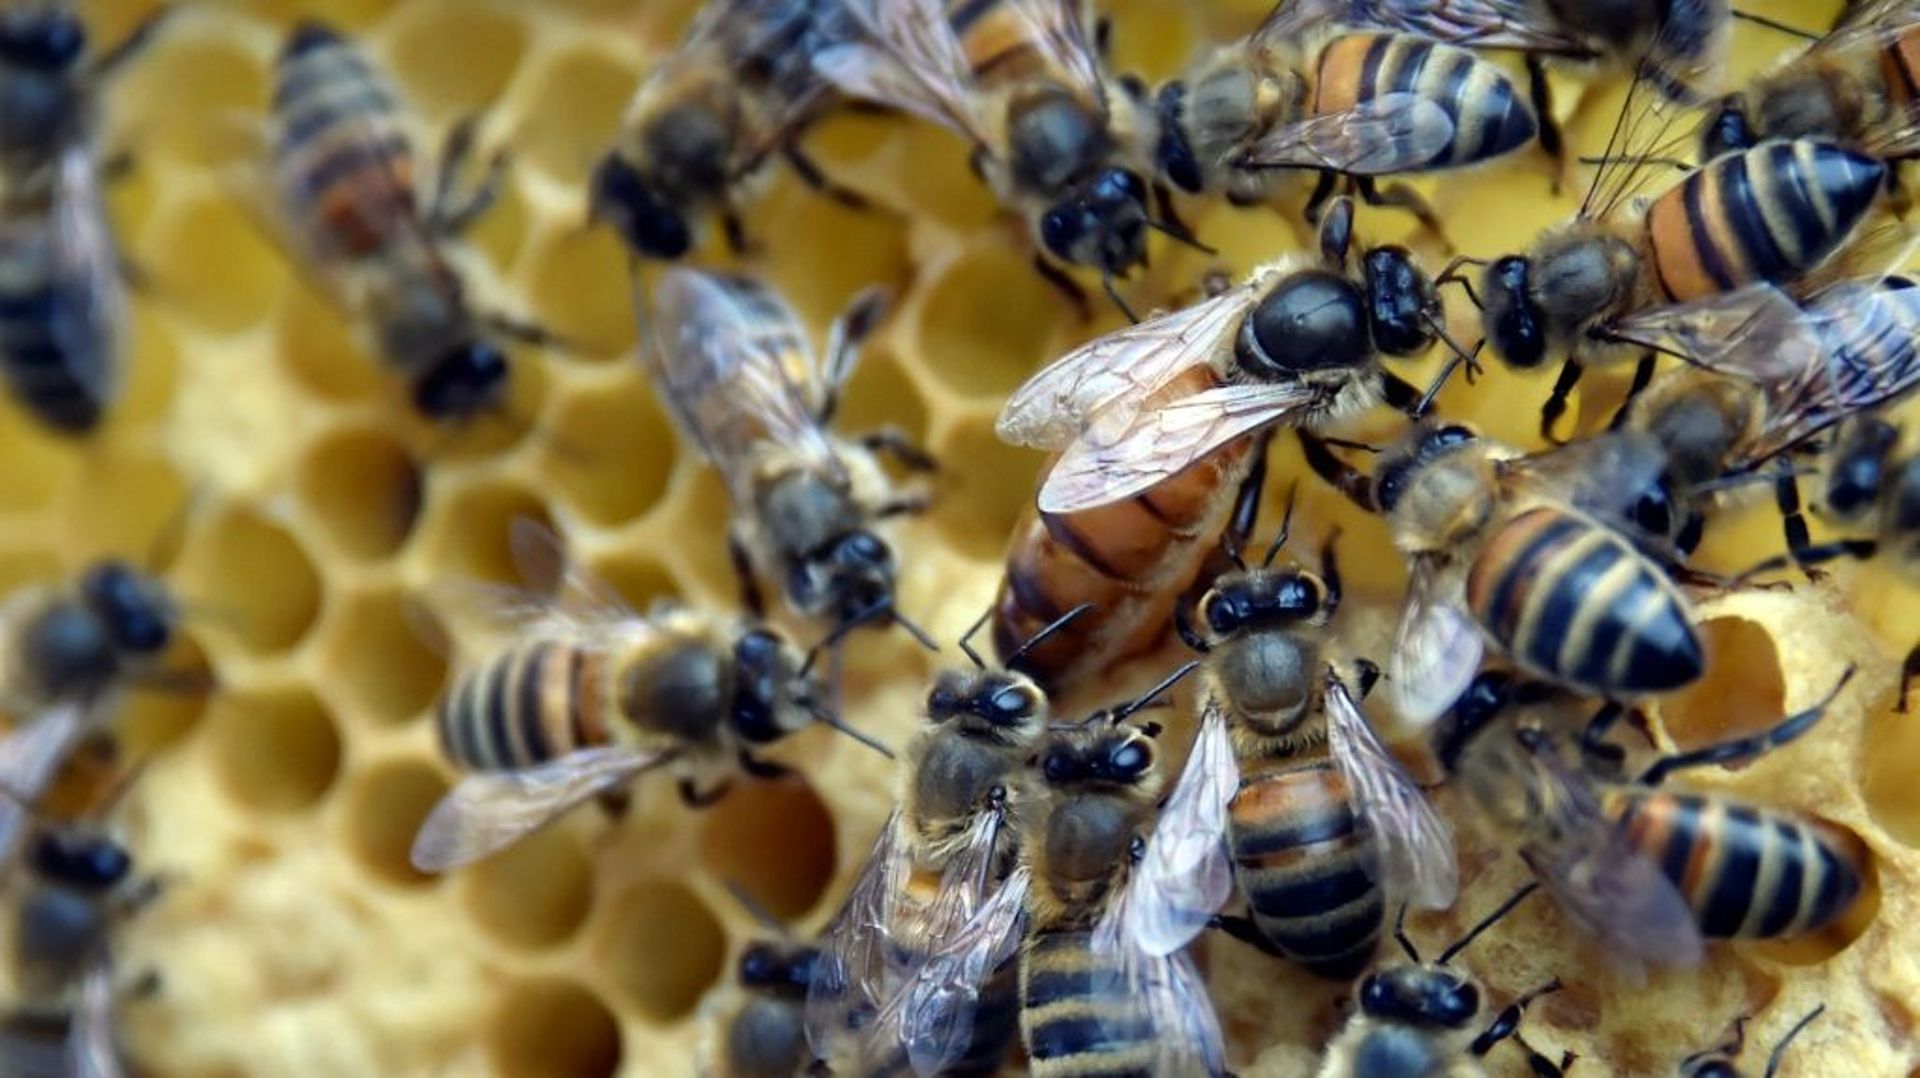 Les allergiques au pollen doivent éviter les compléments alimentaires à base de produits de la ruche, à savoir la gelée royale et la propolis, selon l'agence de sécurité sanitaire